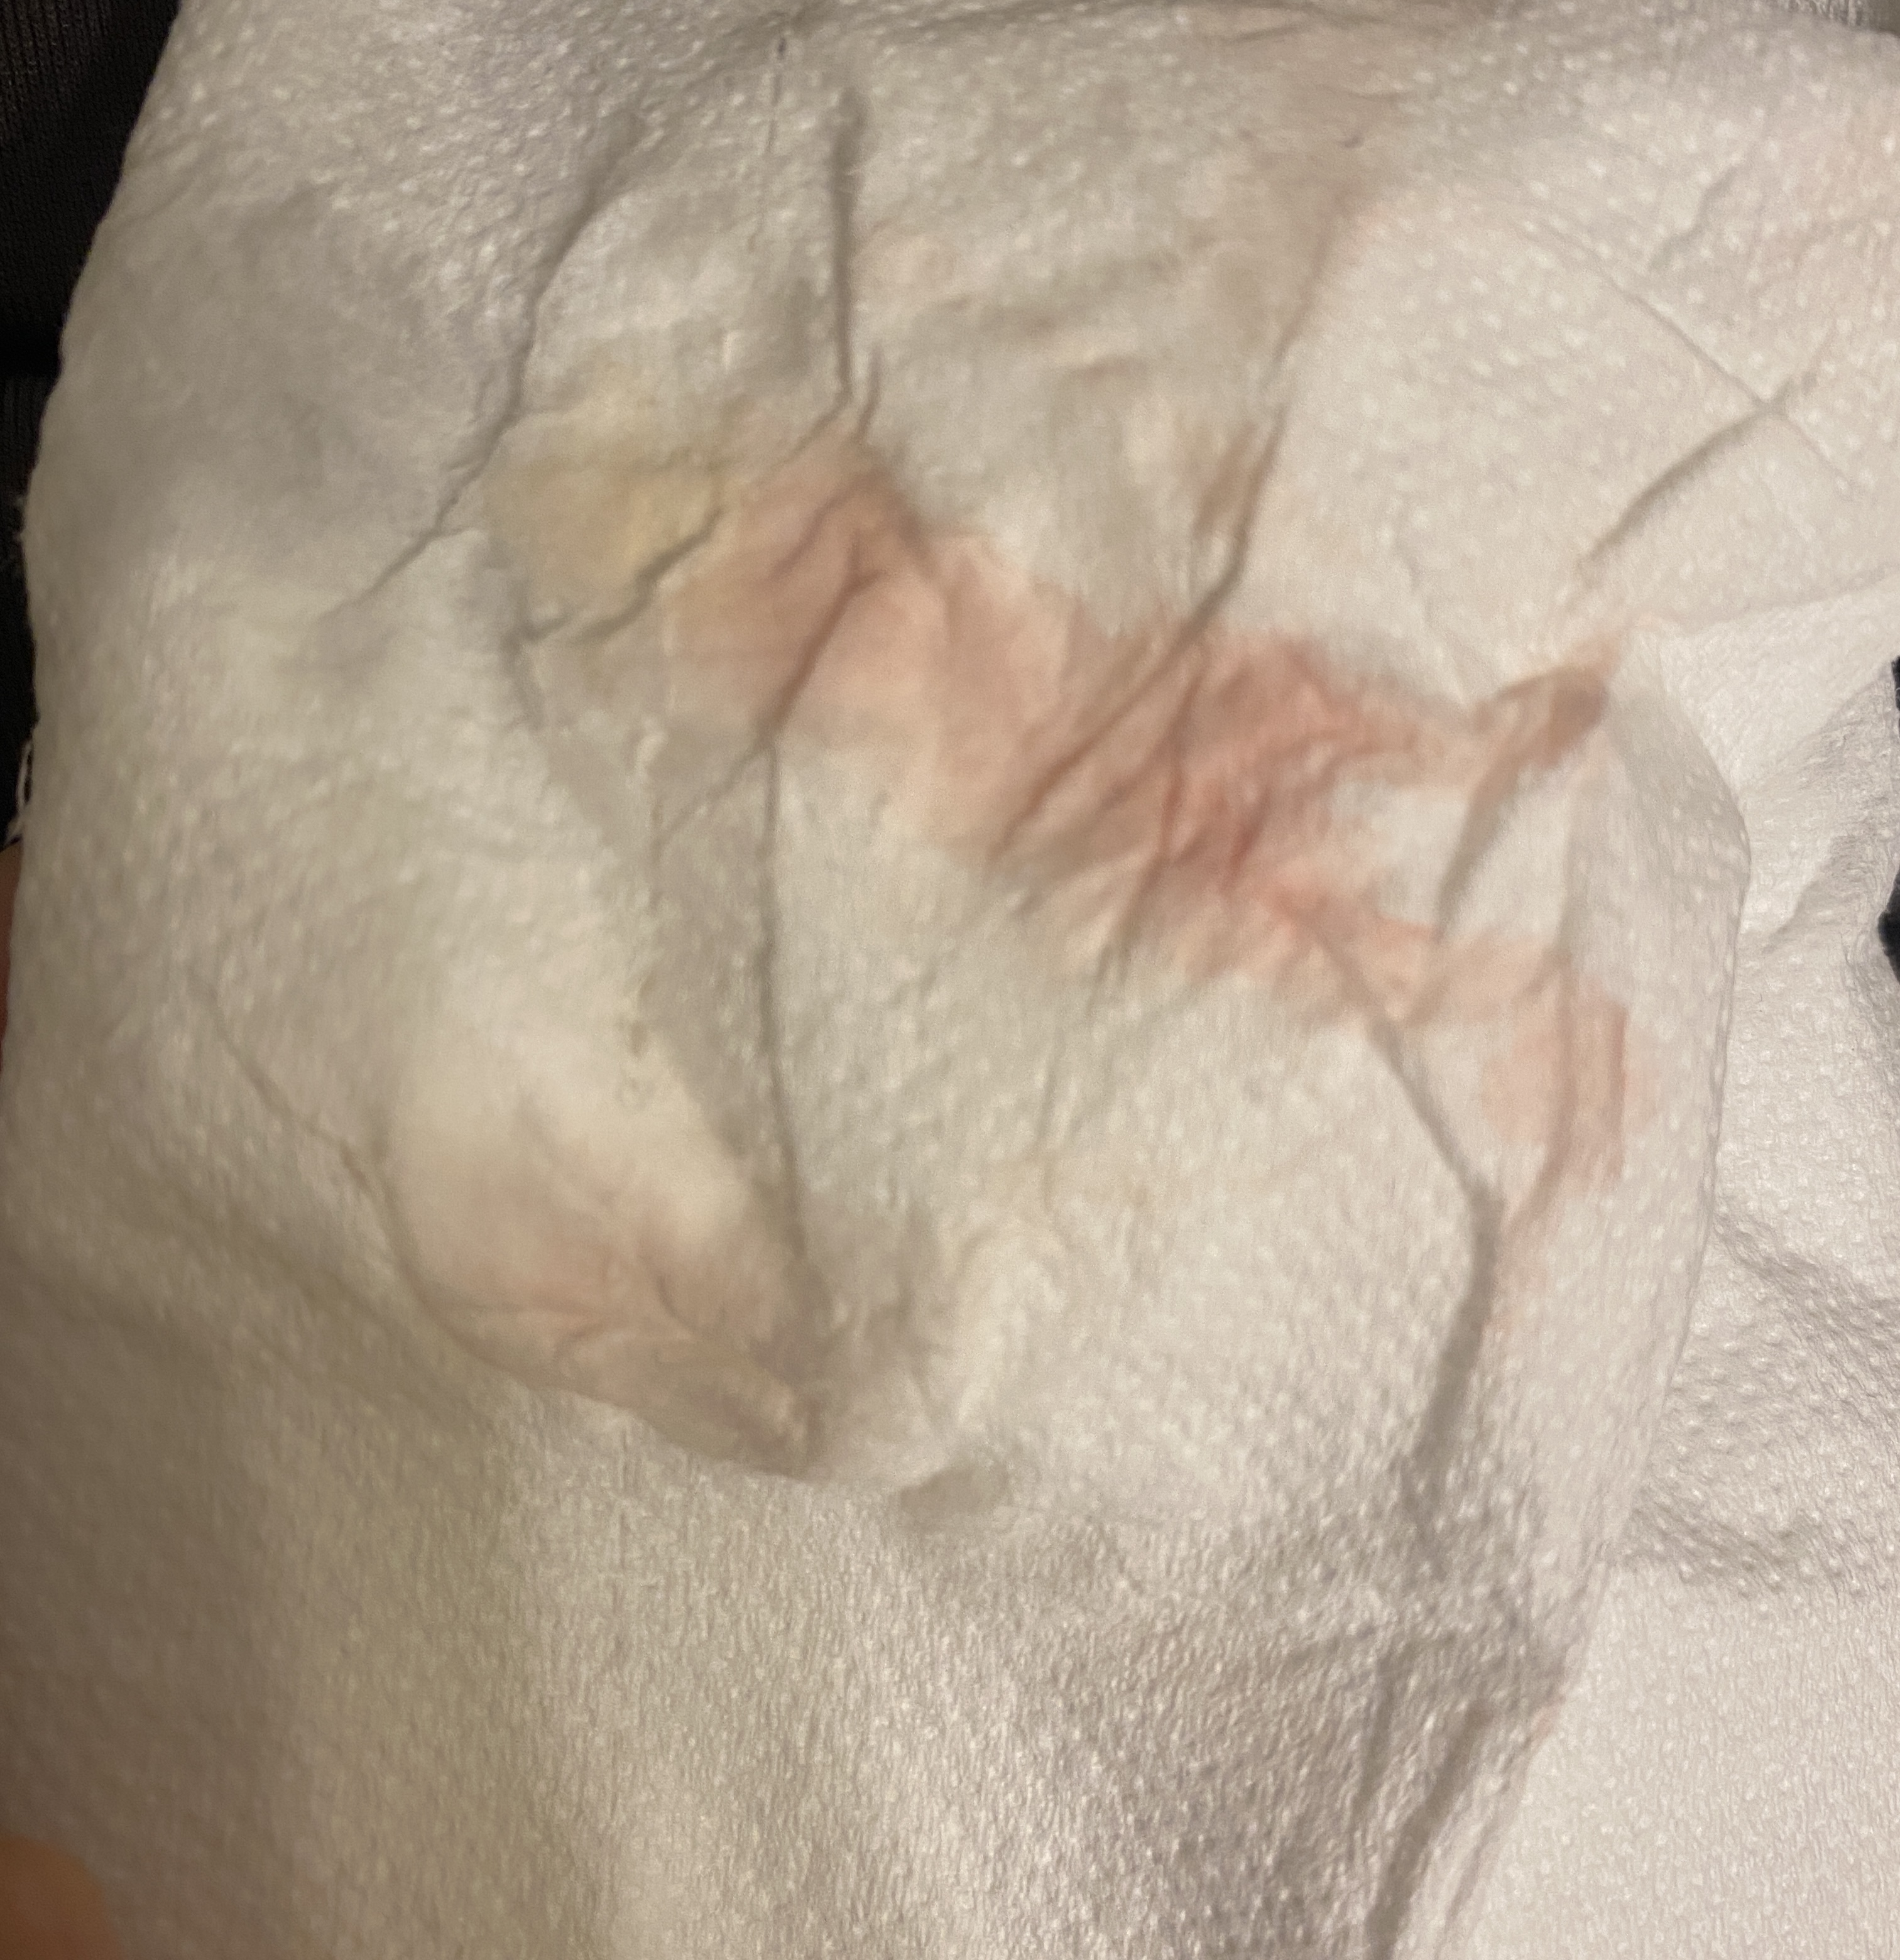 TMI is this implantation bleeding?